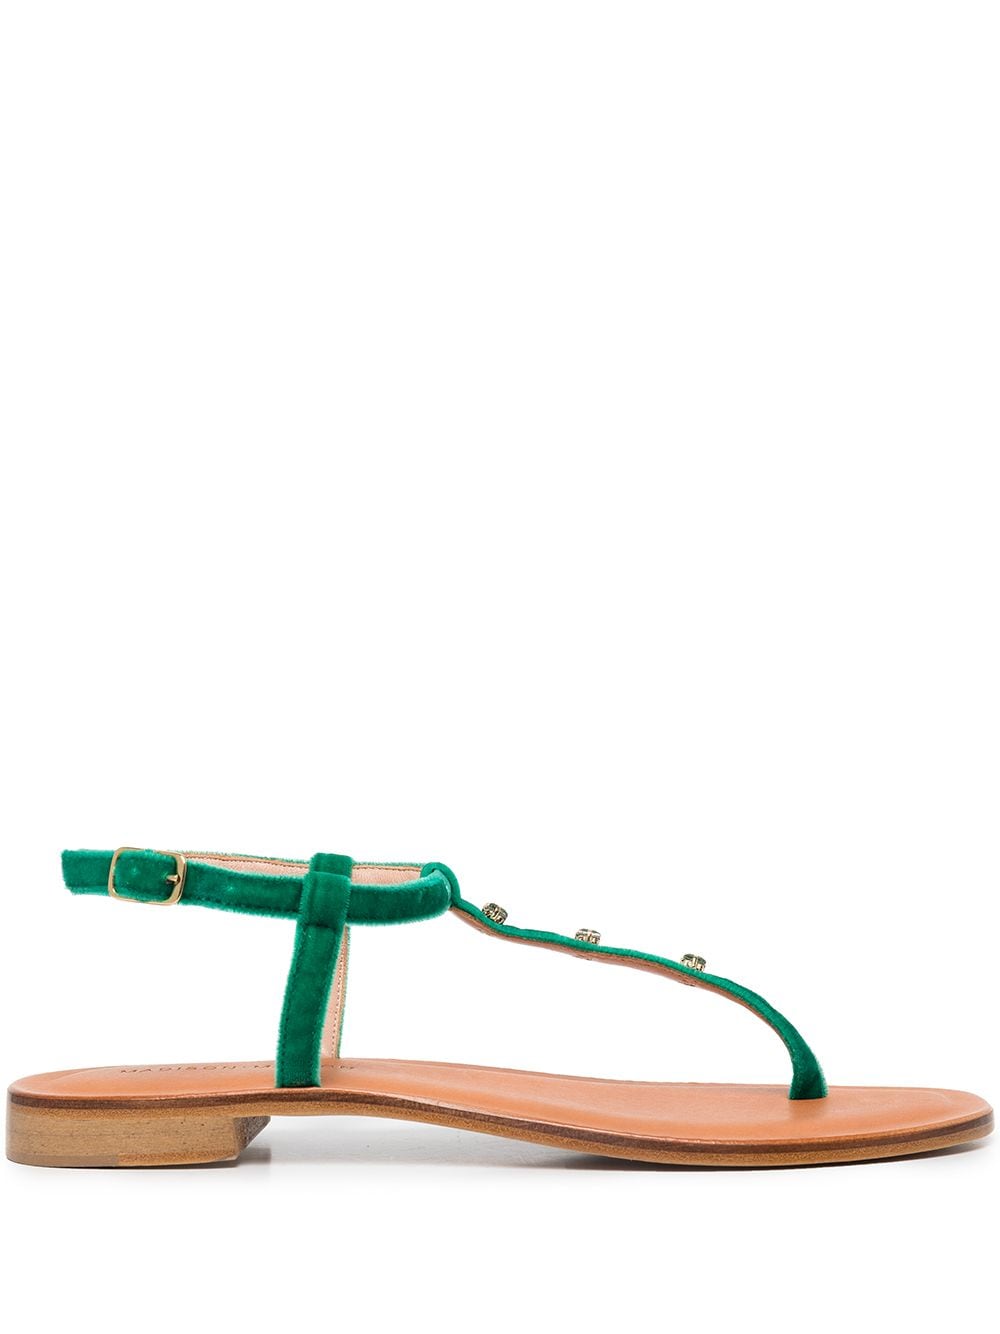 Madison.Maison embellished leather thong sandals - Green von Madison.Maison